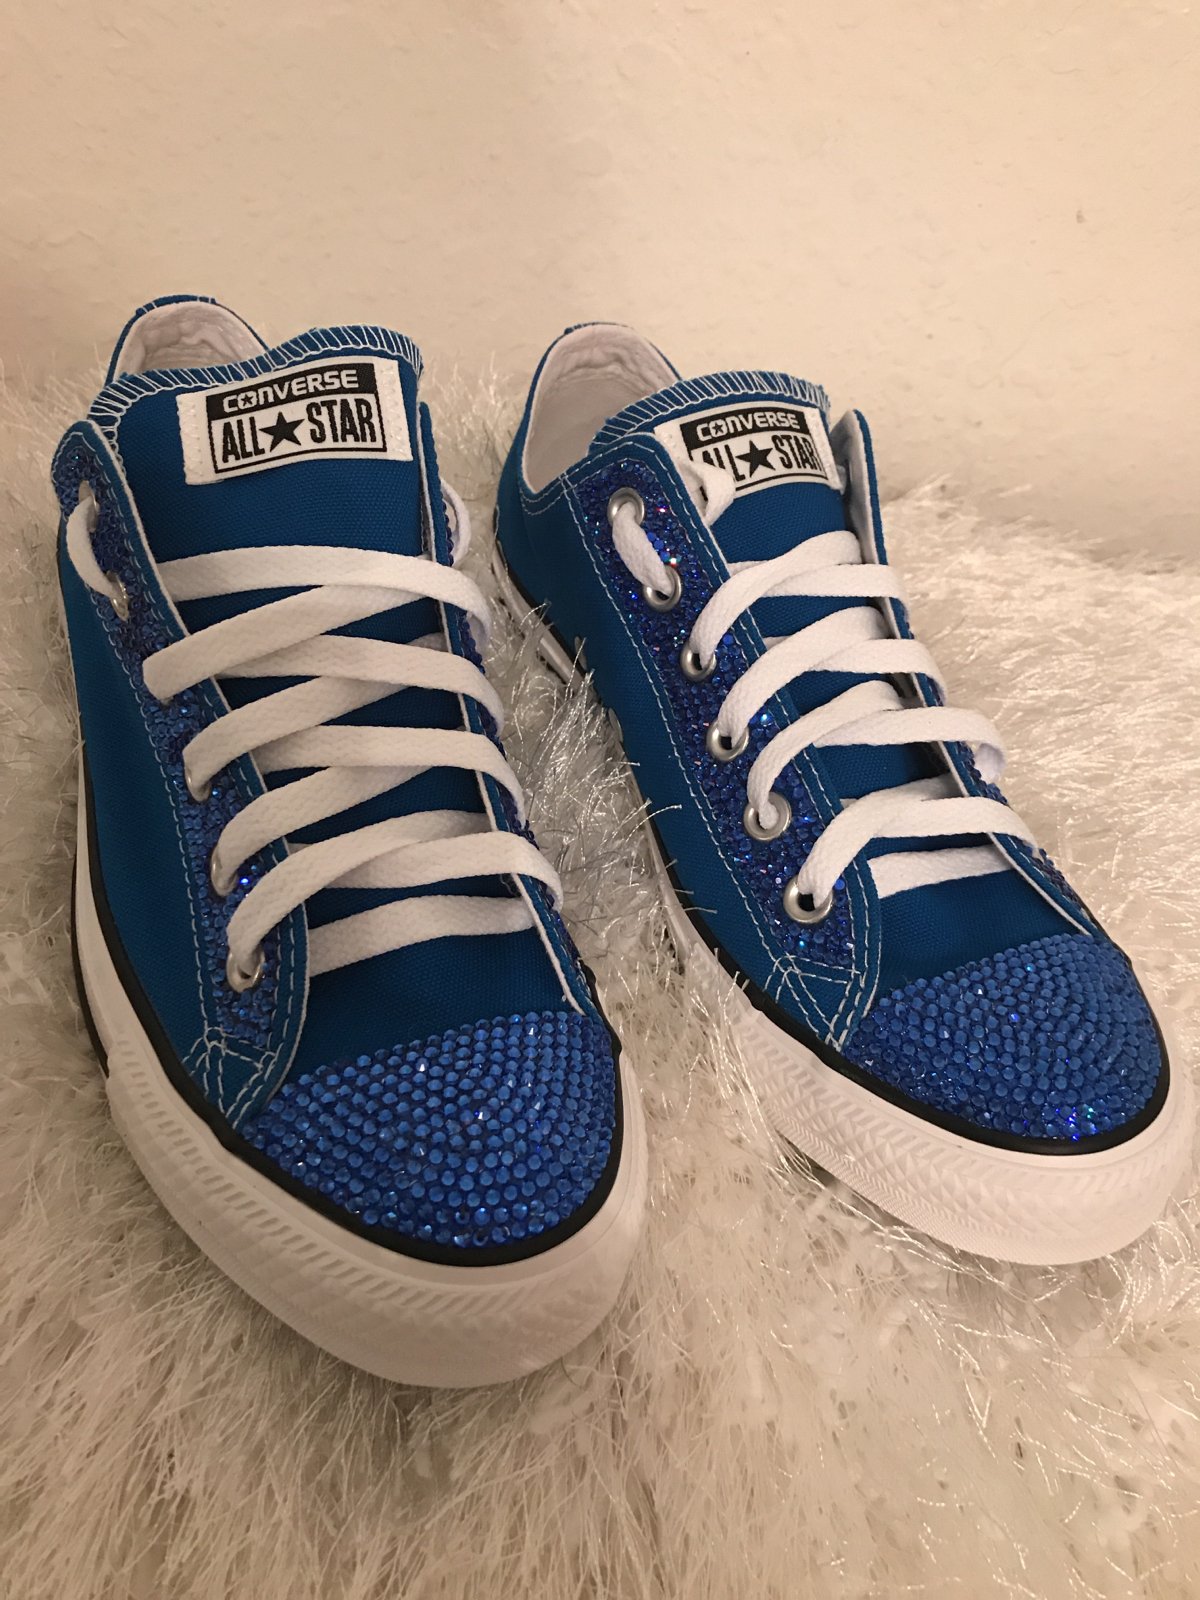 converse shoes royal blue